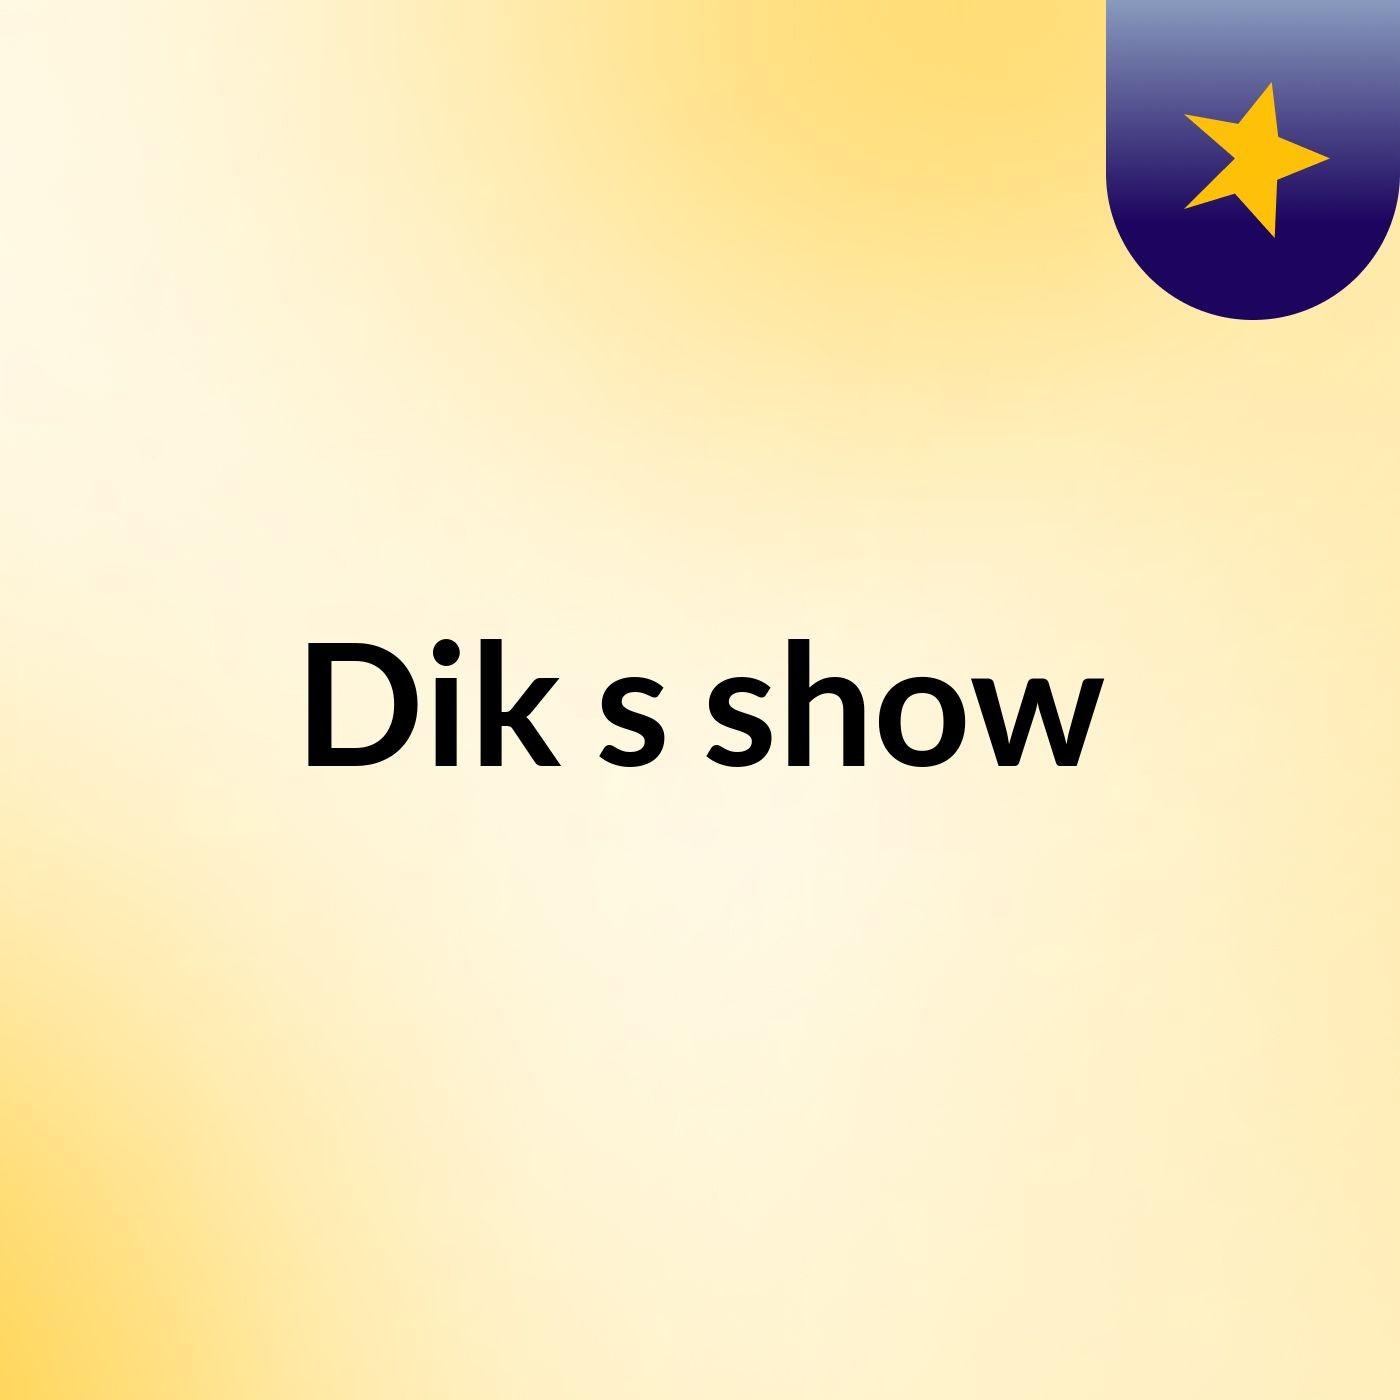 Dik's show